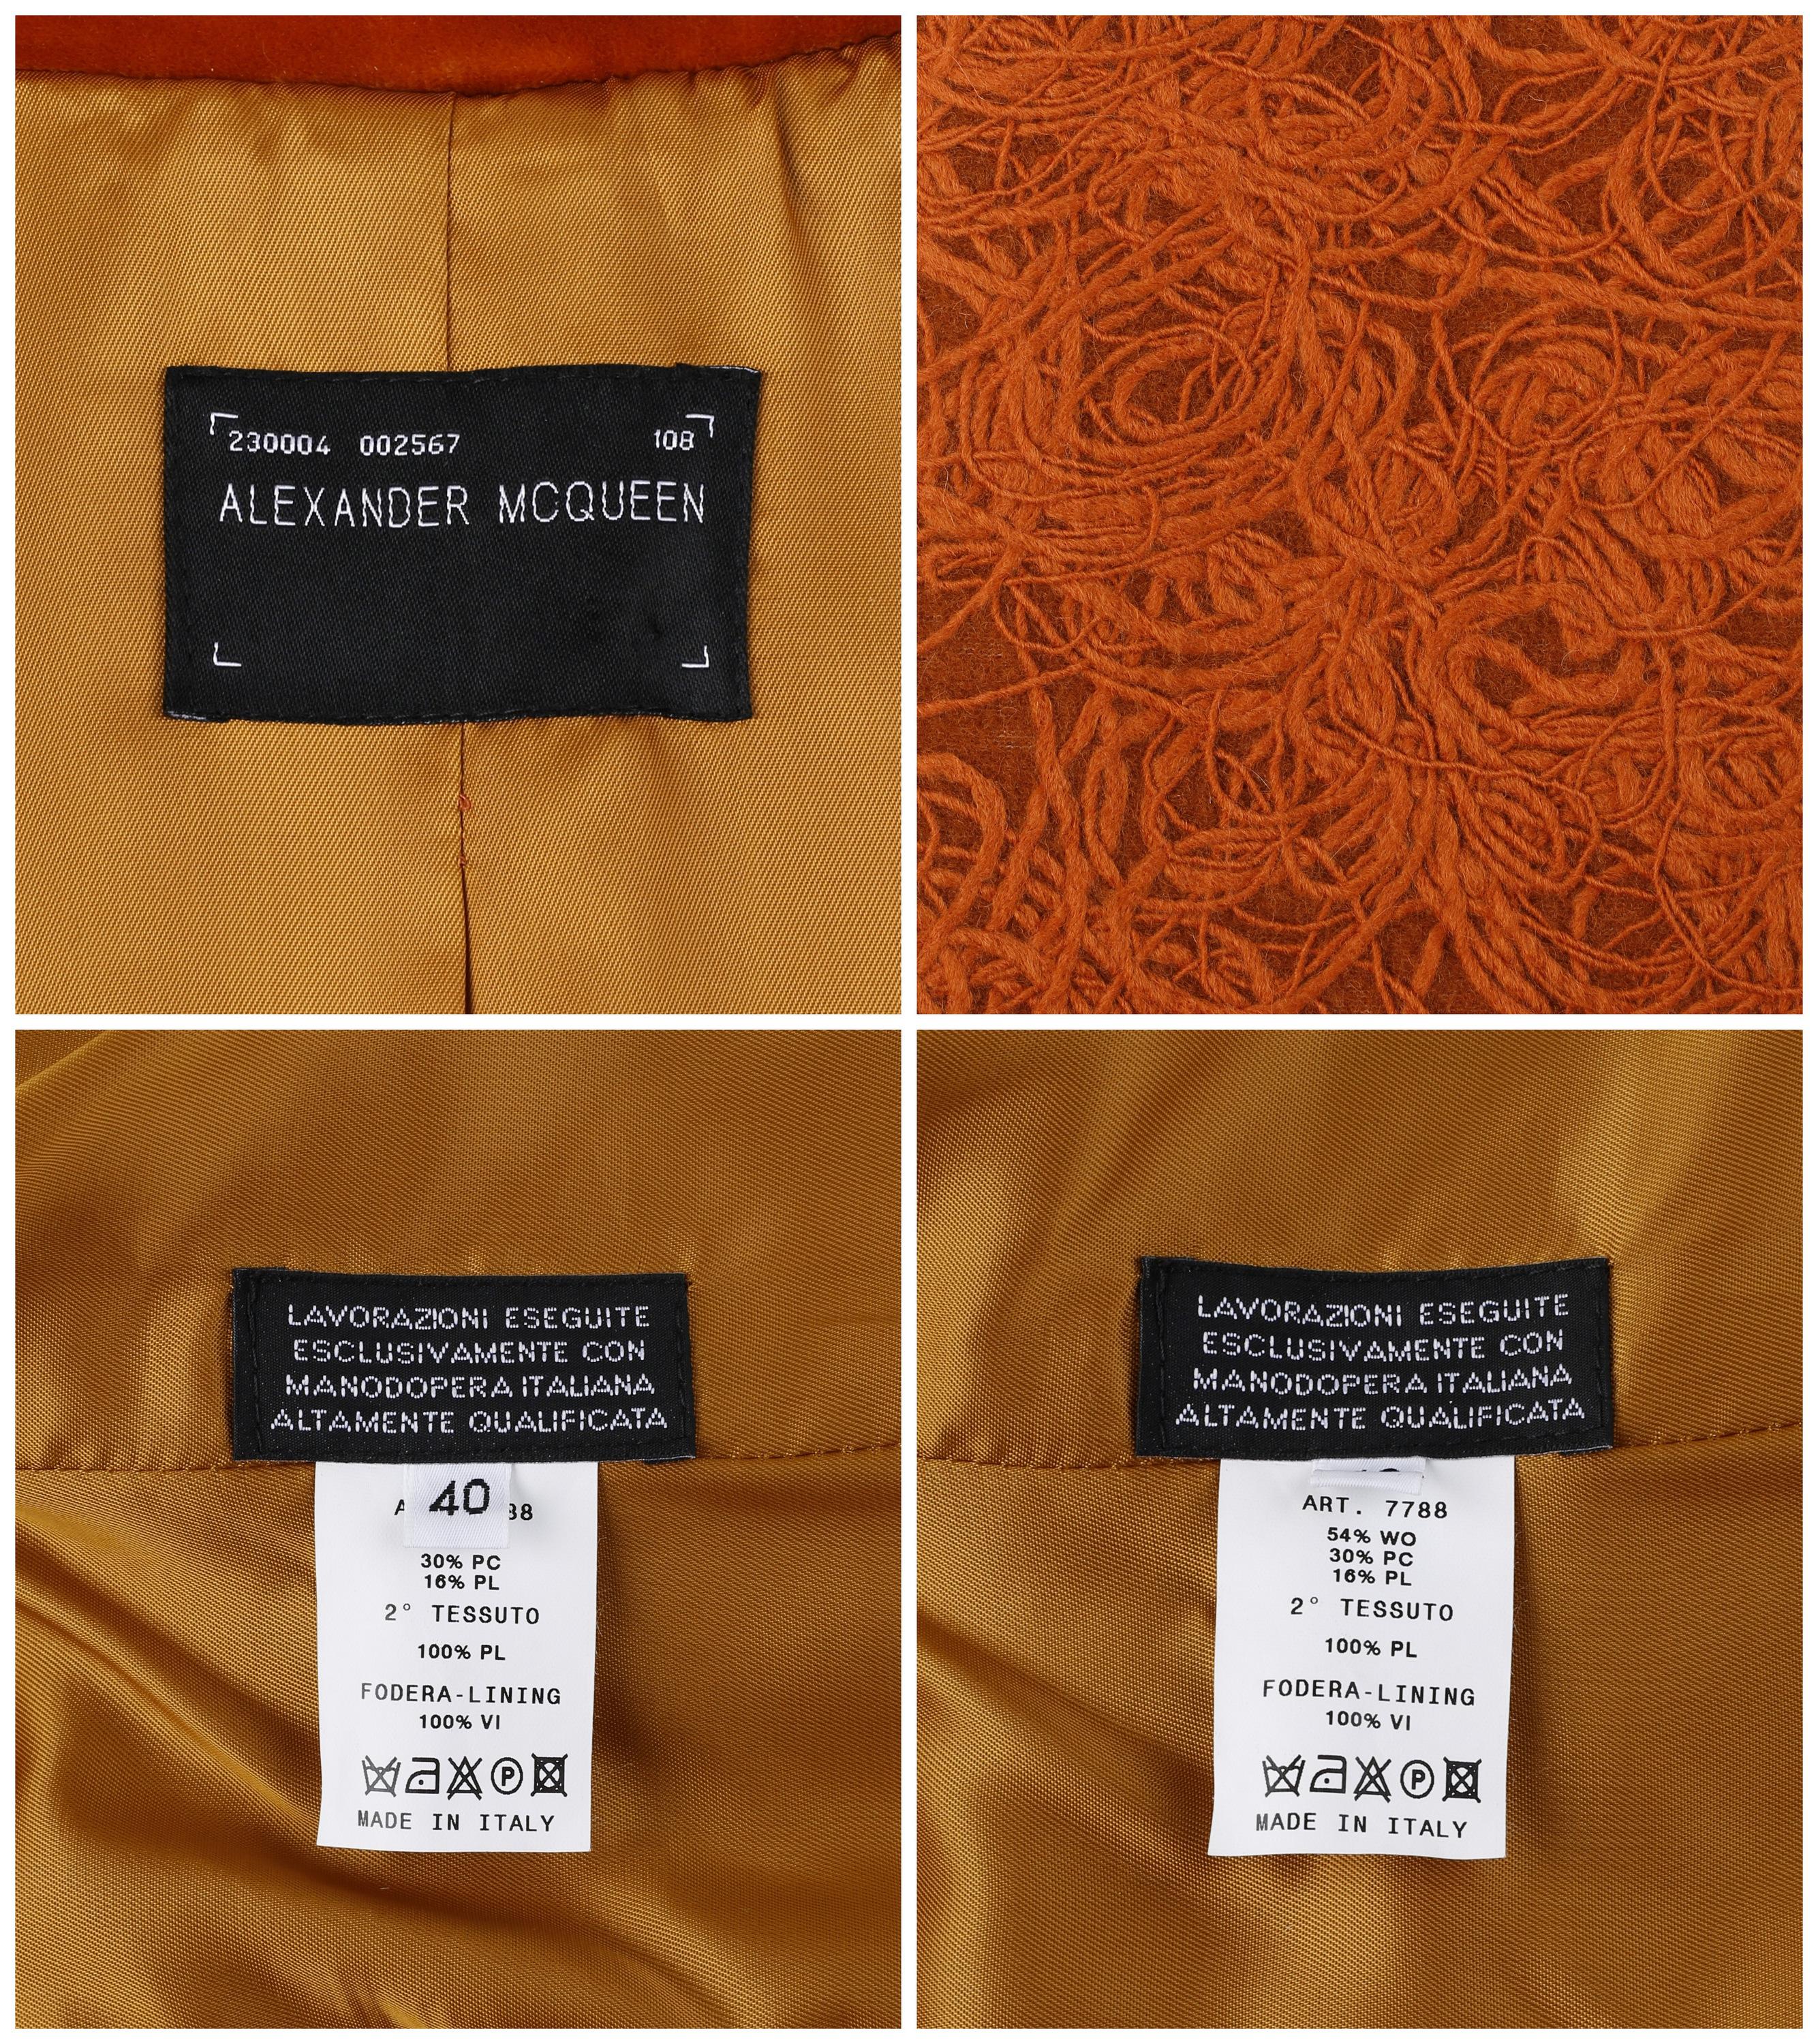 Alexander McQueen c.1996 Rust Orange Textured Wool Tailored Dress Jacket Coat  For Sale 6